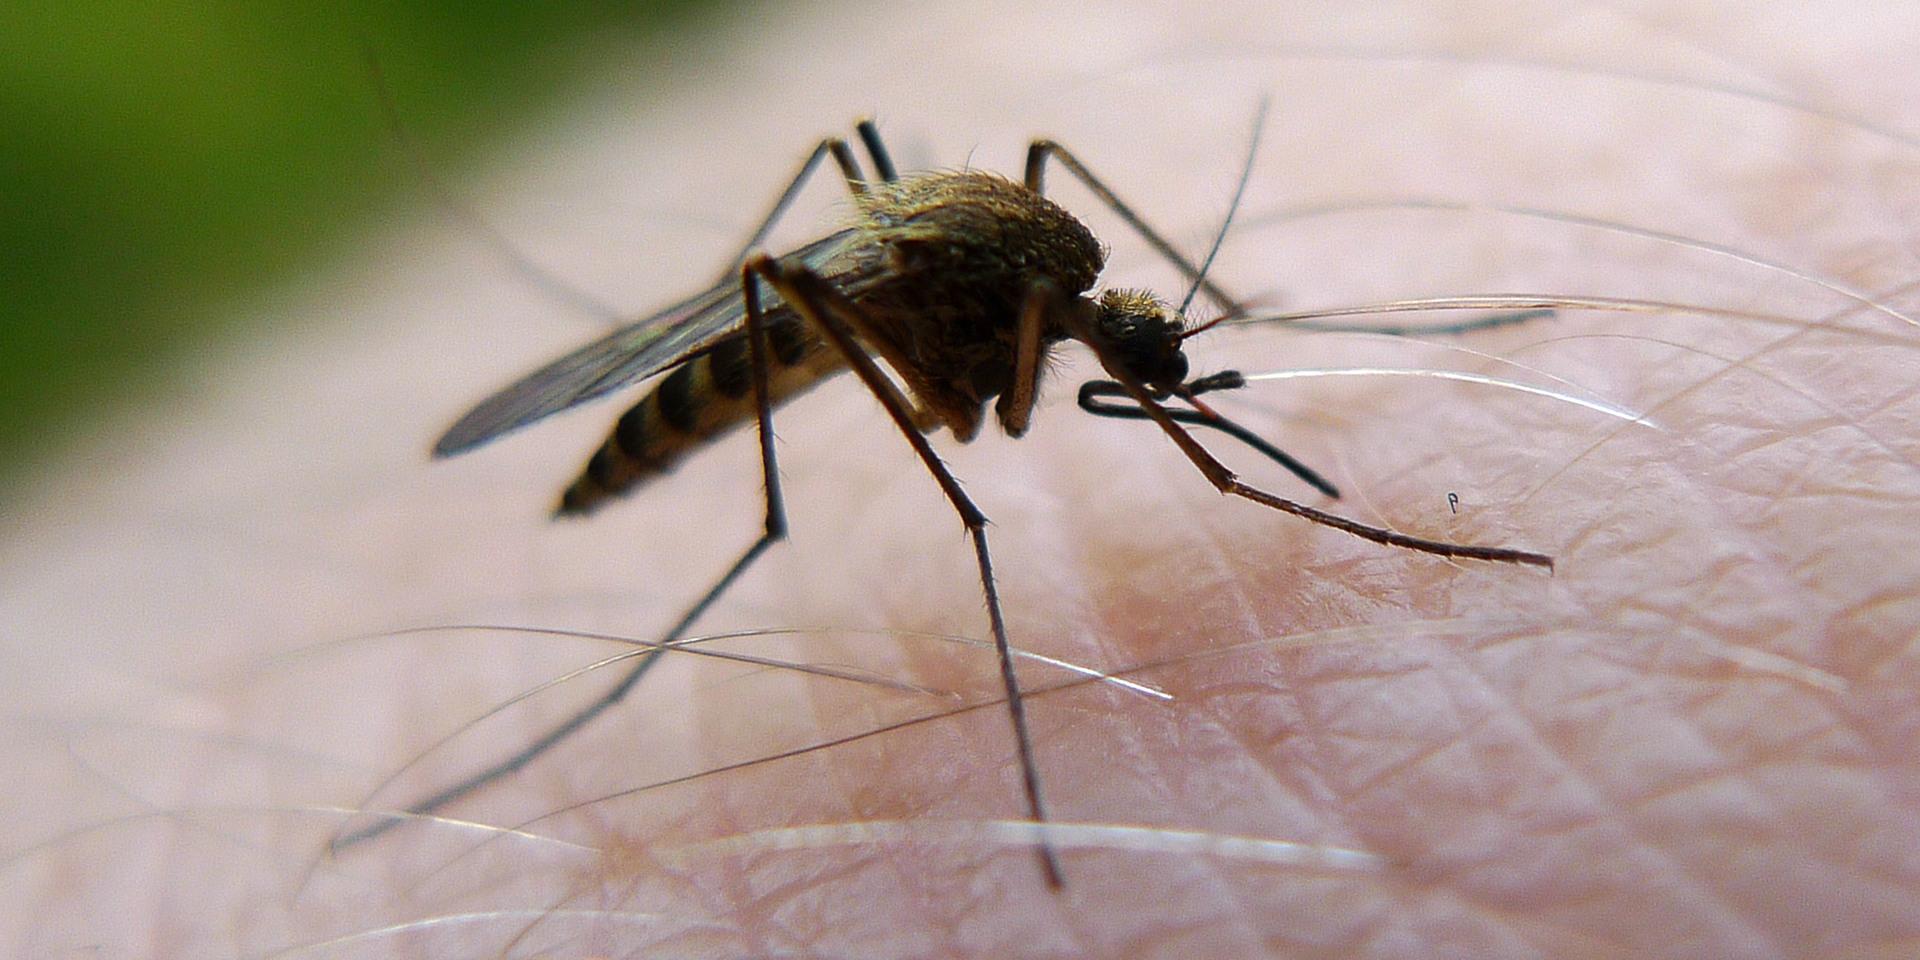 Myggen kan bli en rejäl sommarplåga. Arkivbild.